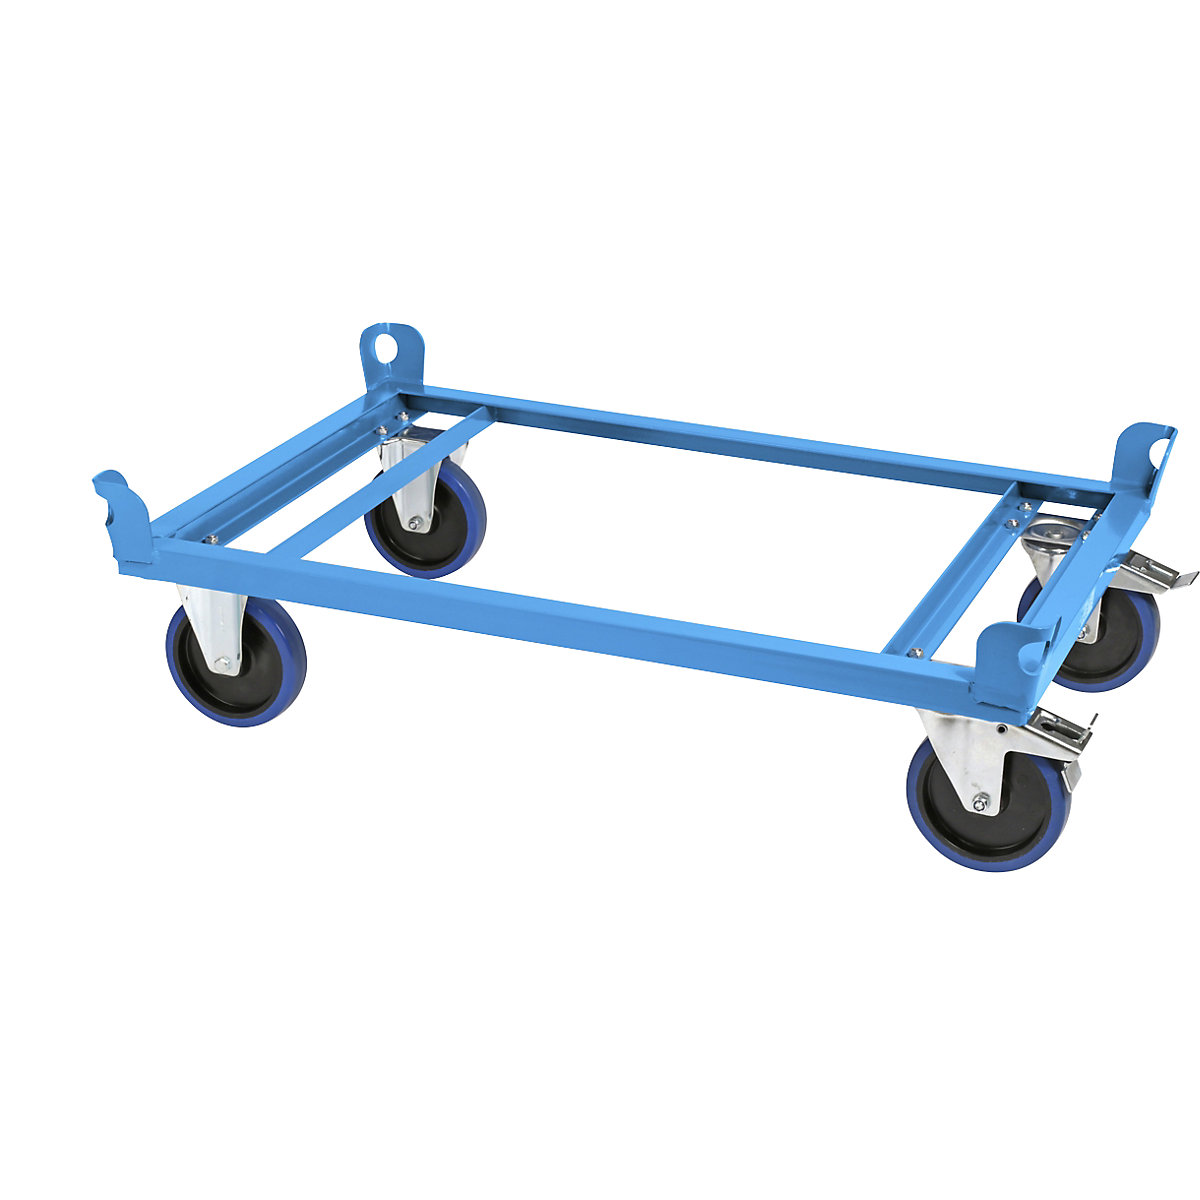 Onderwagen van staal – eurokraft pro, voor pallets van 1000 x 800 mm, laadvermogen 1000 kg, laadhoogte 280 mm, blauw, vanaf 10 stuks-16